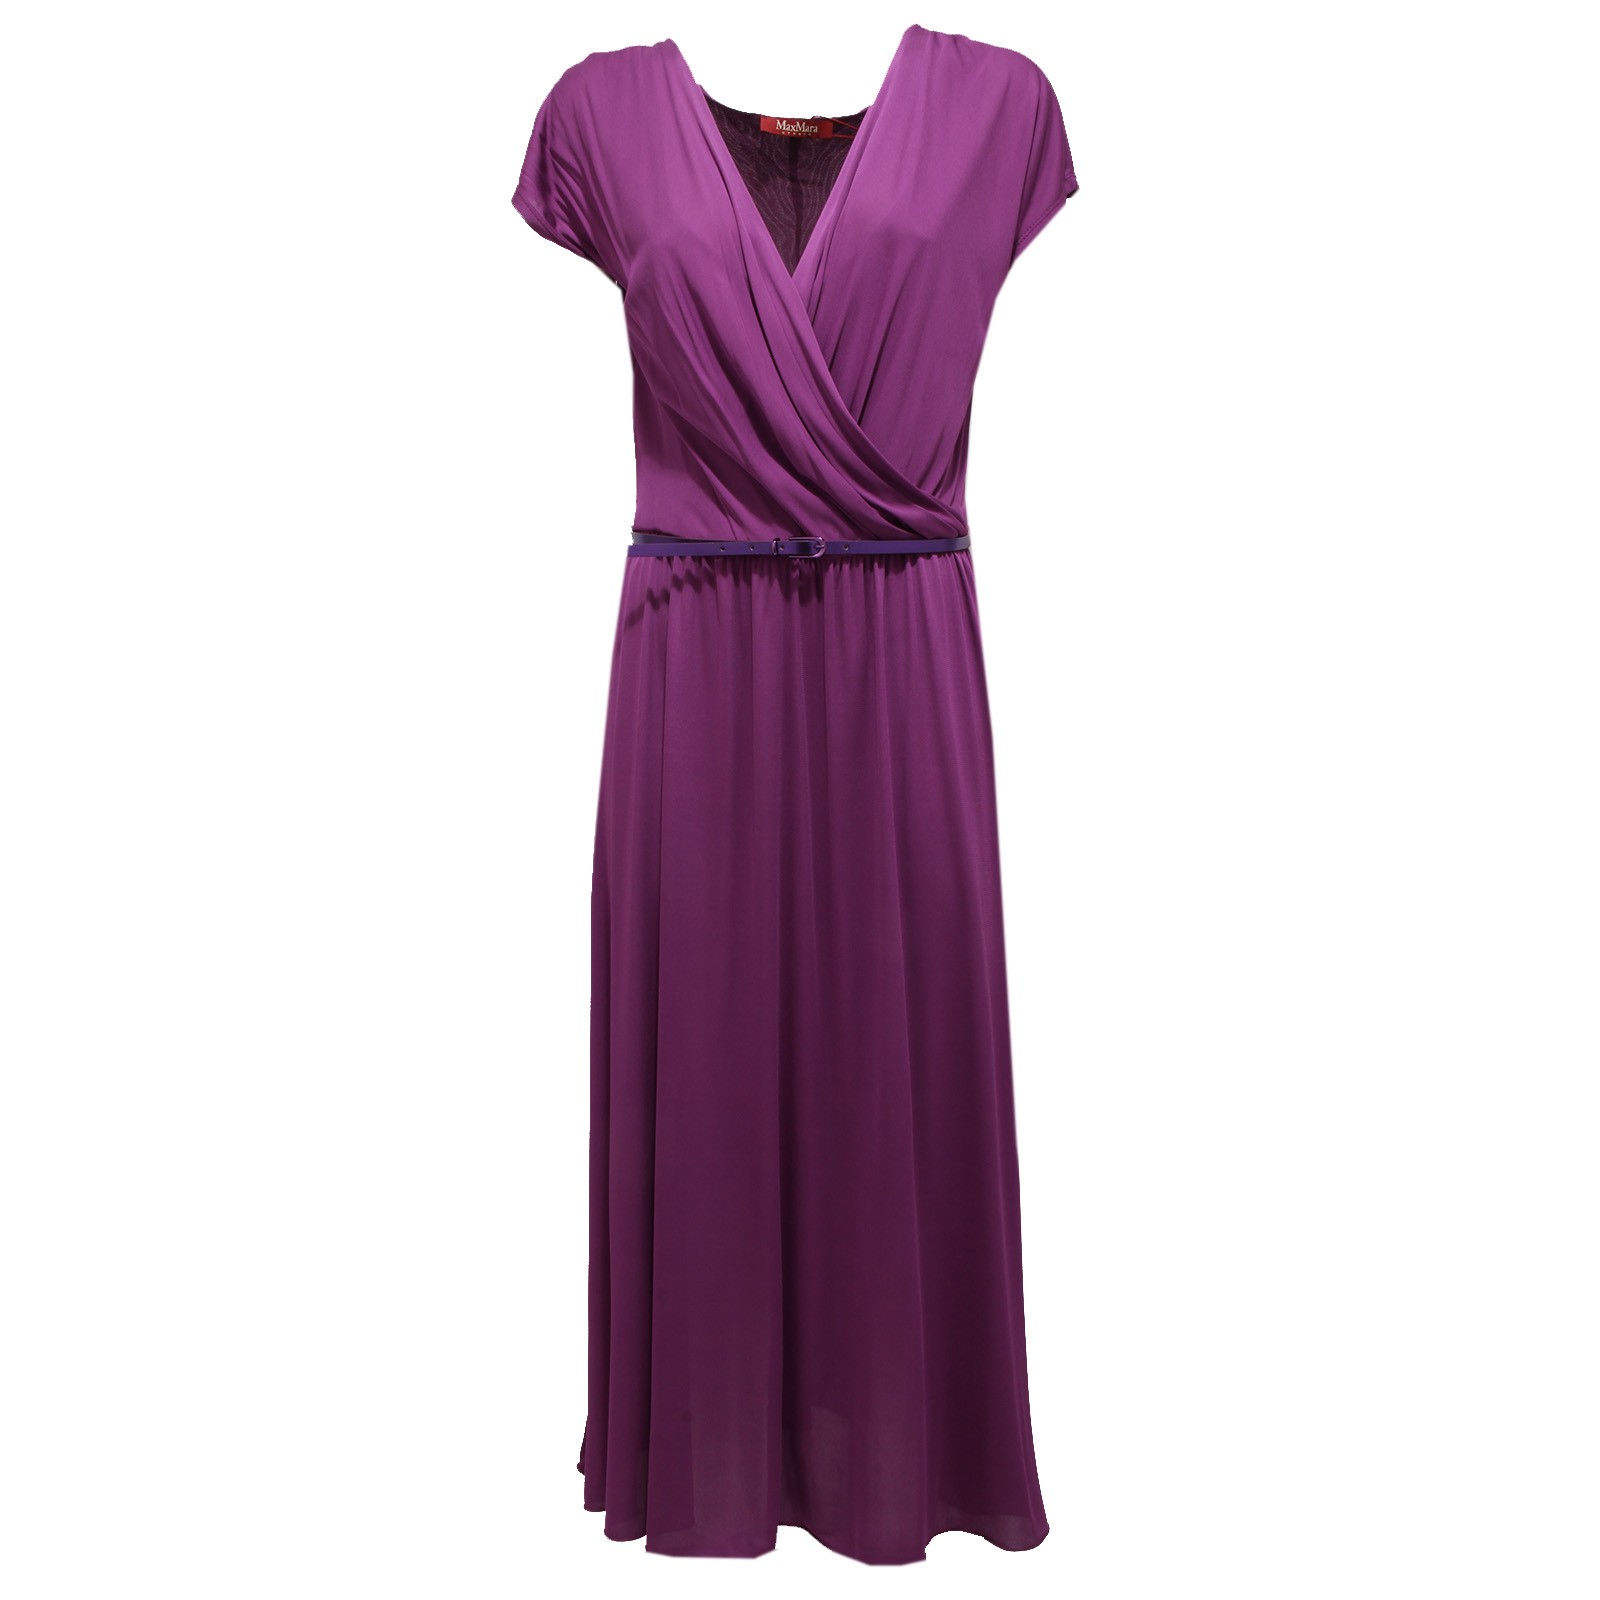 막스마라 여성 드레스 MAXMARA light purple dress woman